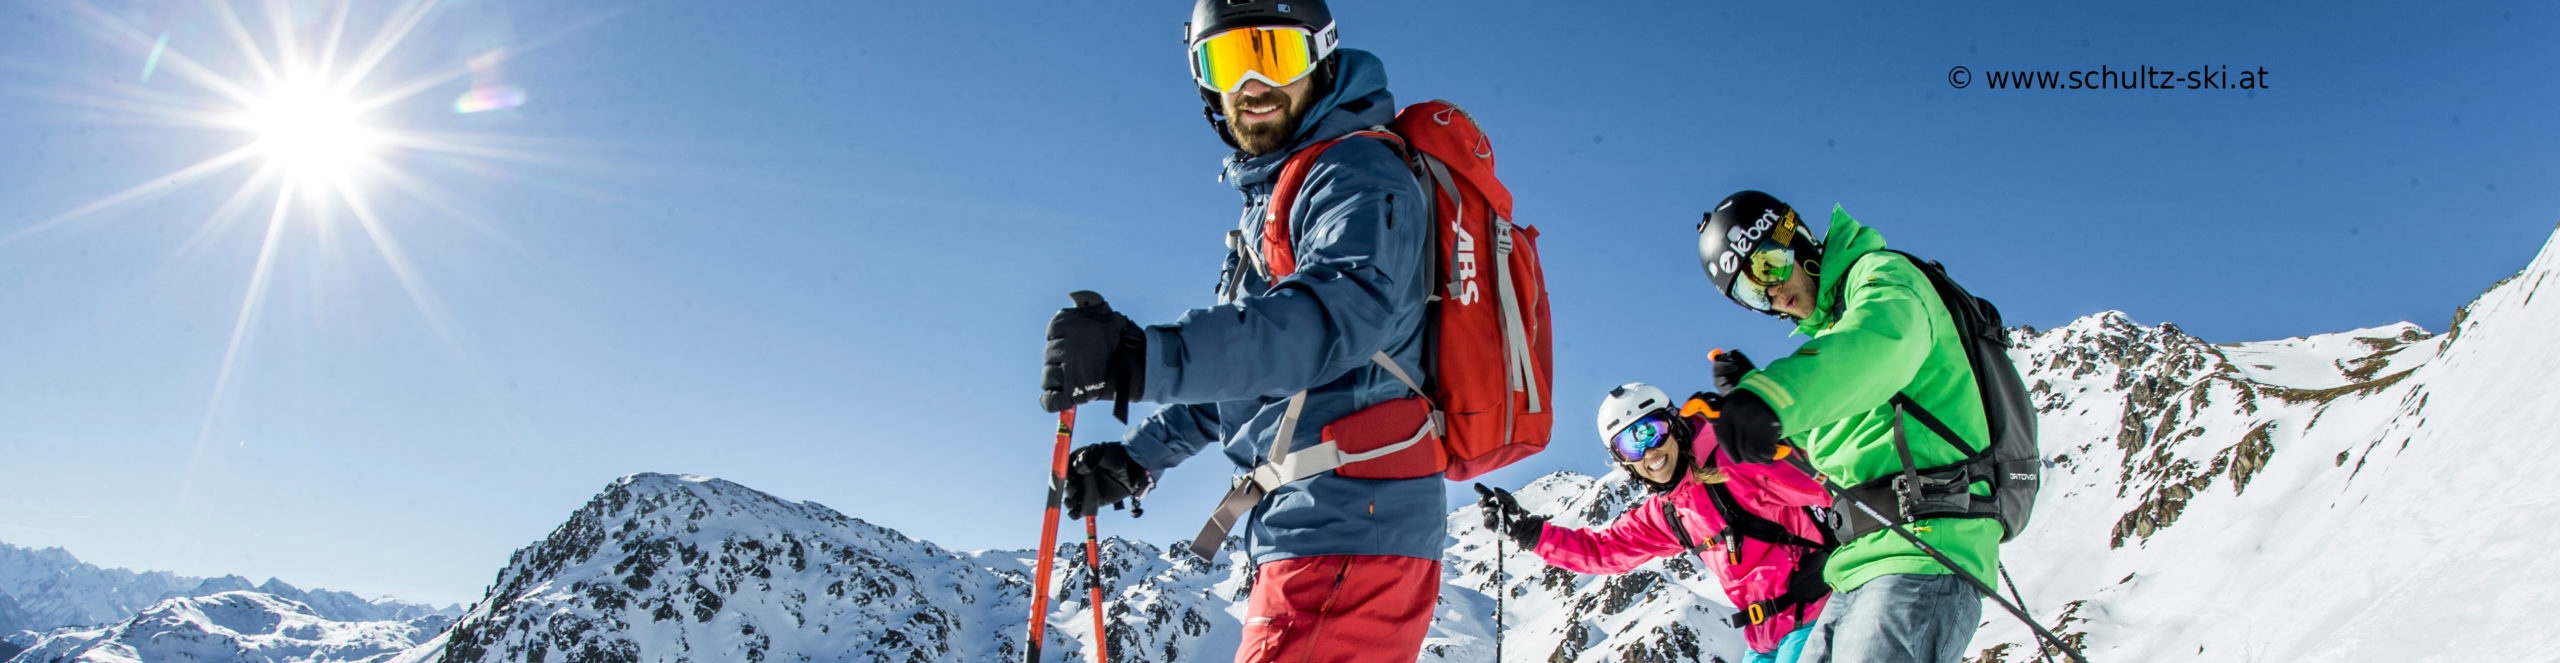 ZILLERTAL – Skiwochenende ab Donnerstag Nachmittag – 3 Skitage – Skisafari Mayrhofen & Kaltenbach – ab Wü 